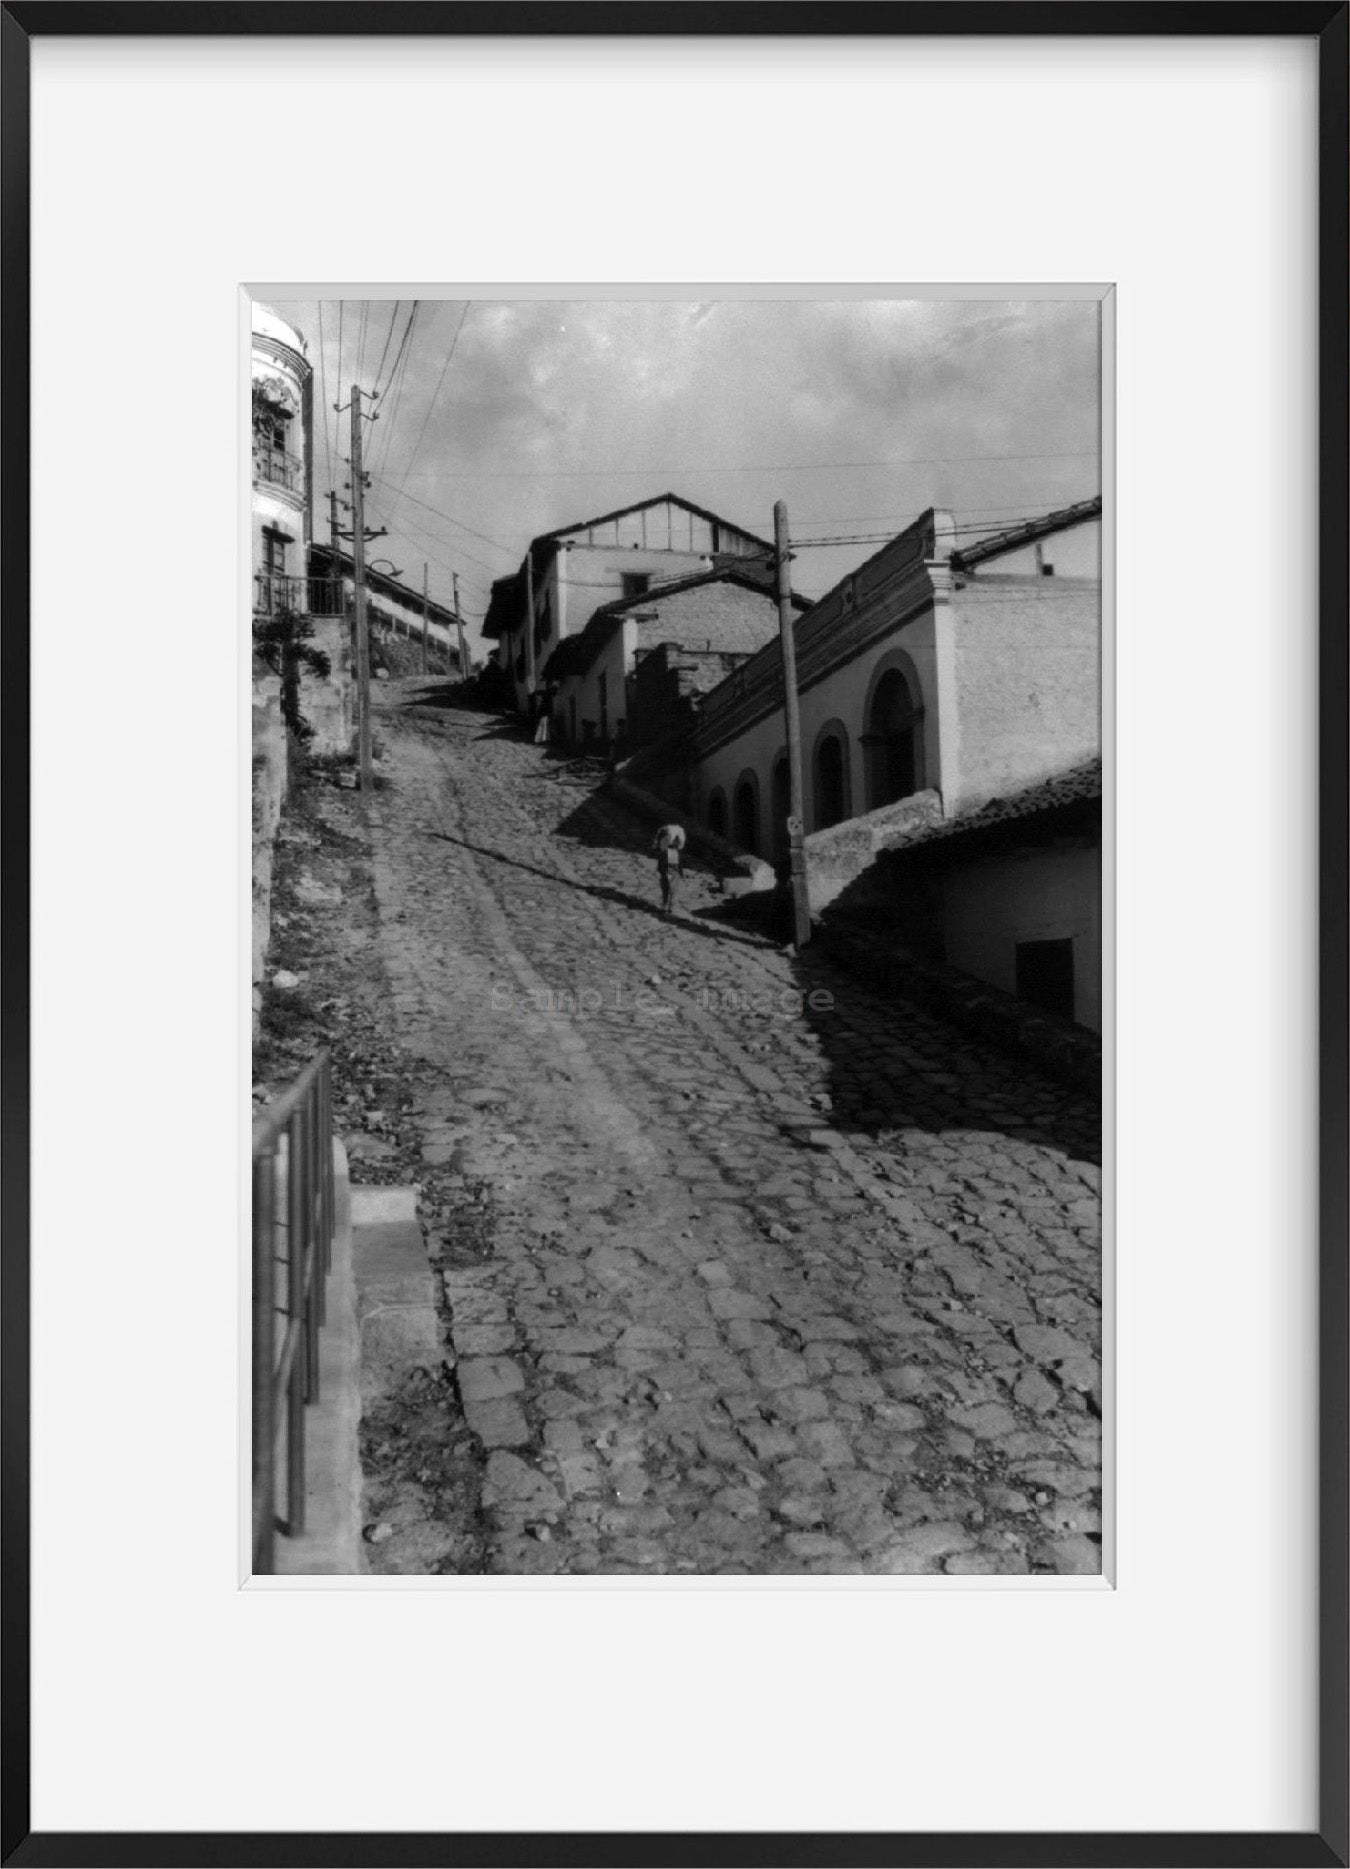 between 1940 and 1945? photograph of Pavement, Tegucigalpa, Honduras